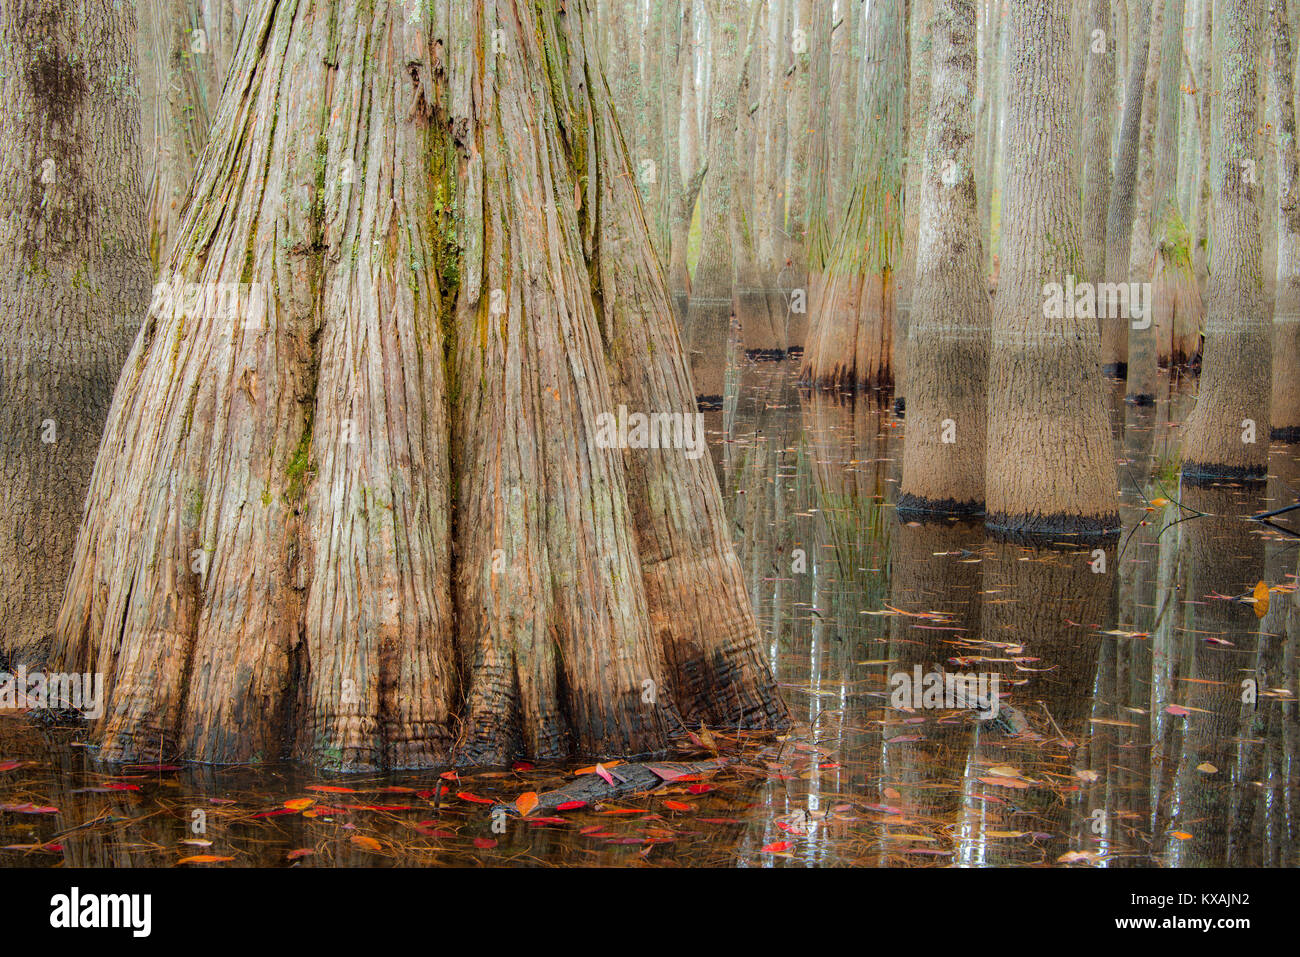 Otoño, ciprés calvo (Taxodium distchum), Cipreses (Taxodium ascendens estanque) Catedral Patrimonio de la Bahía Reserva de Fauna, S.Carolina, EE.UU. por Bill Lea/Demb Foto de stock